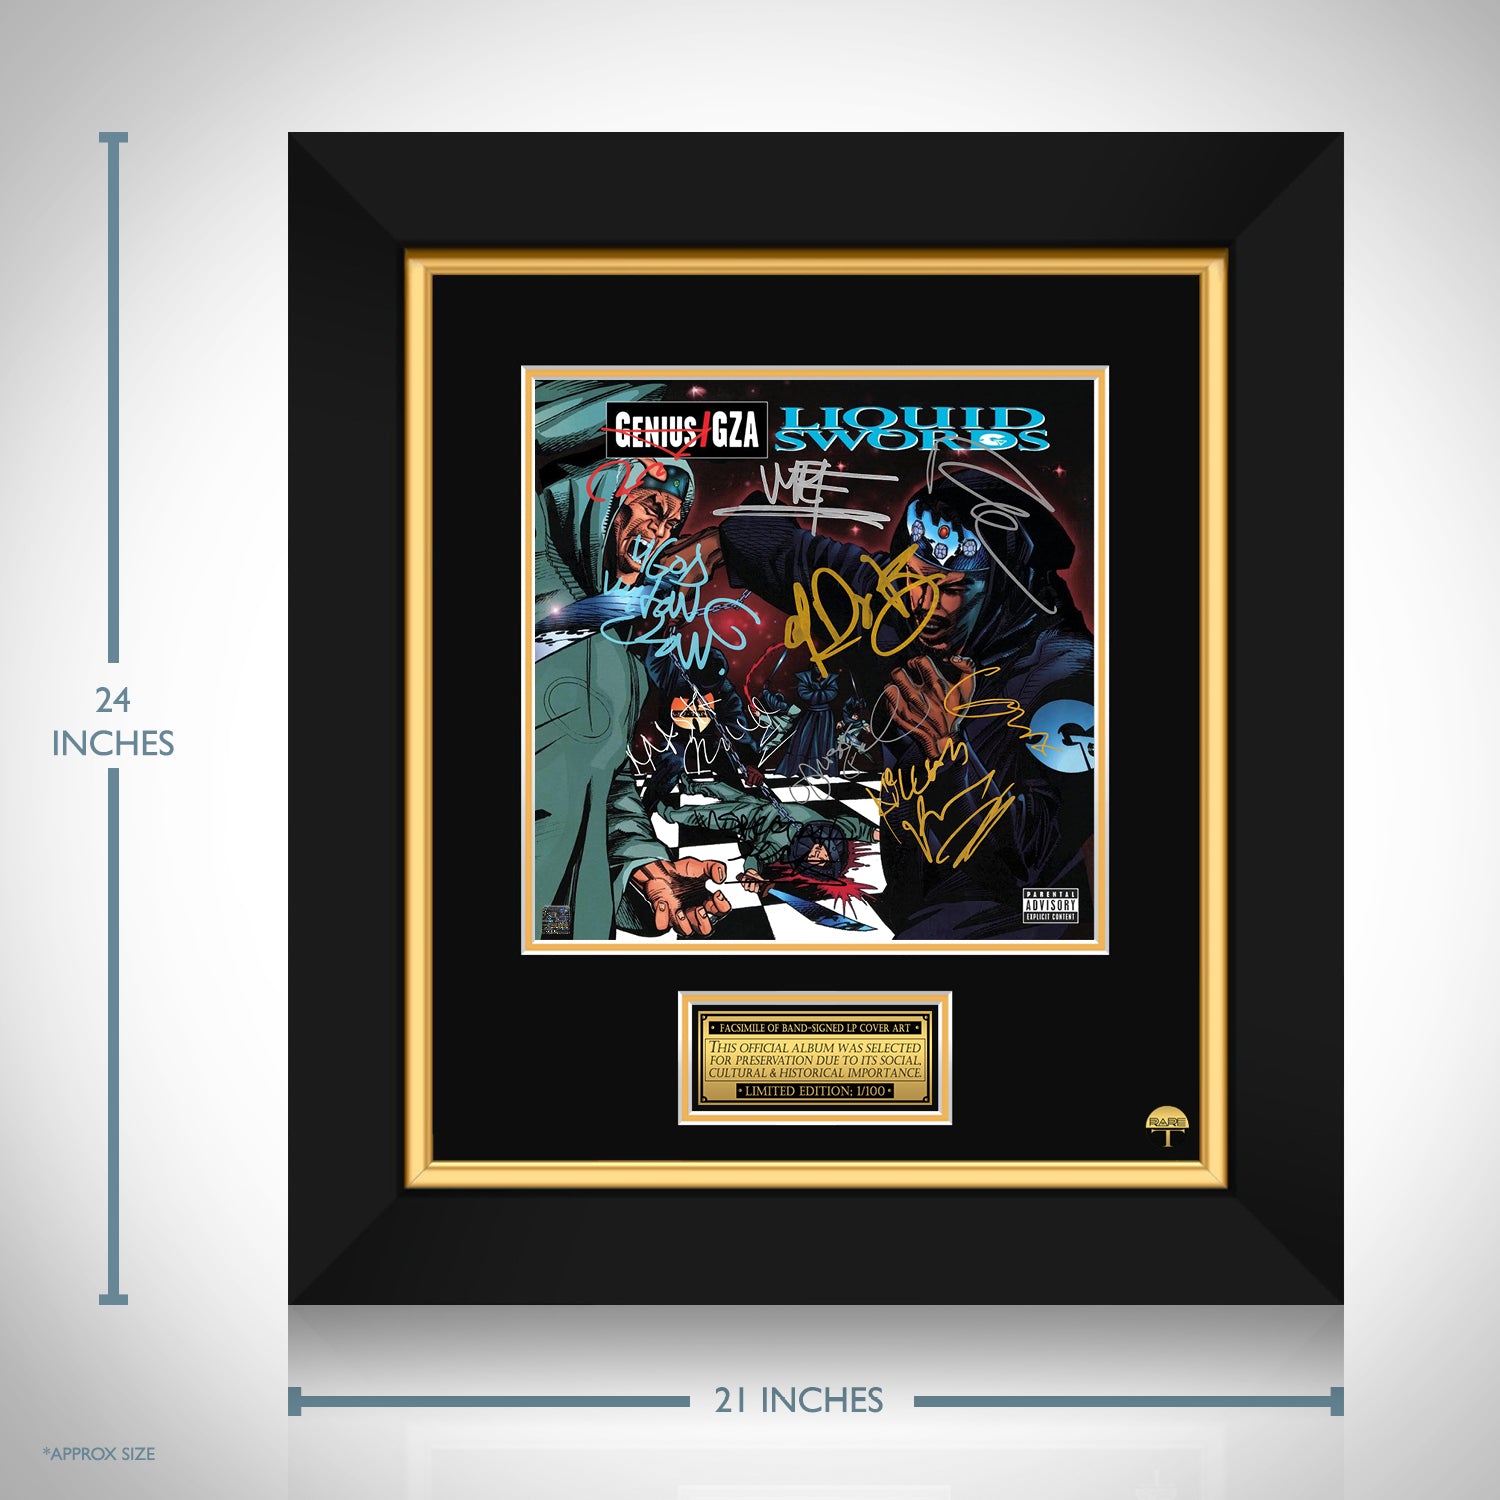 Genius/GZA - Liquid Swords LP Cover Limited Signature Edition 